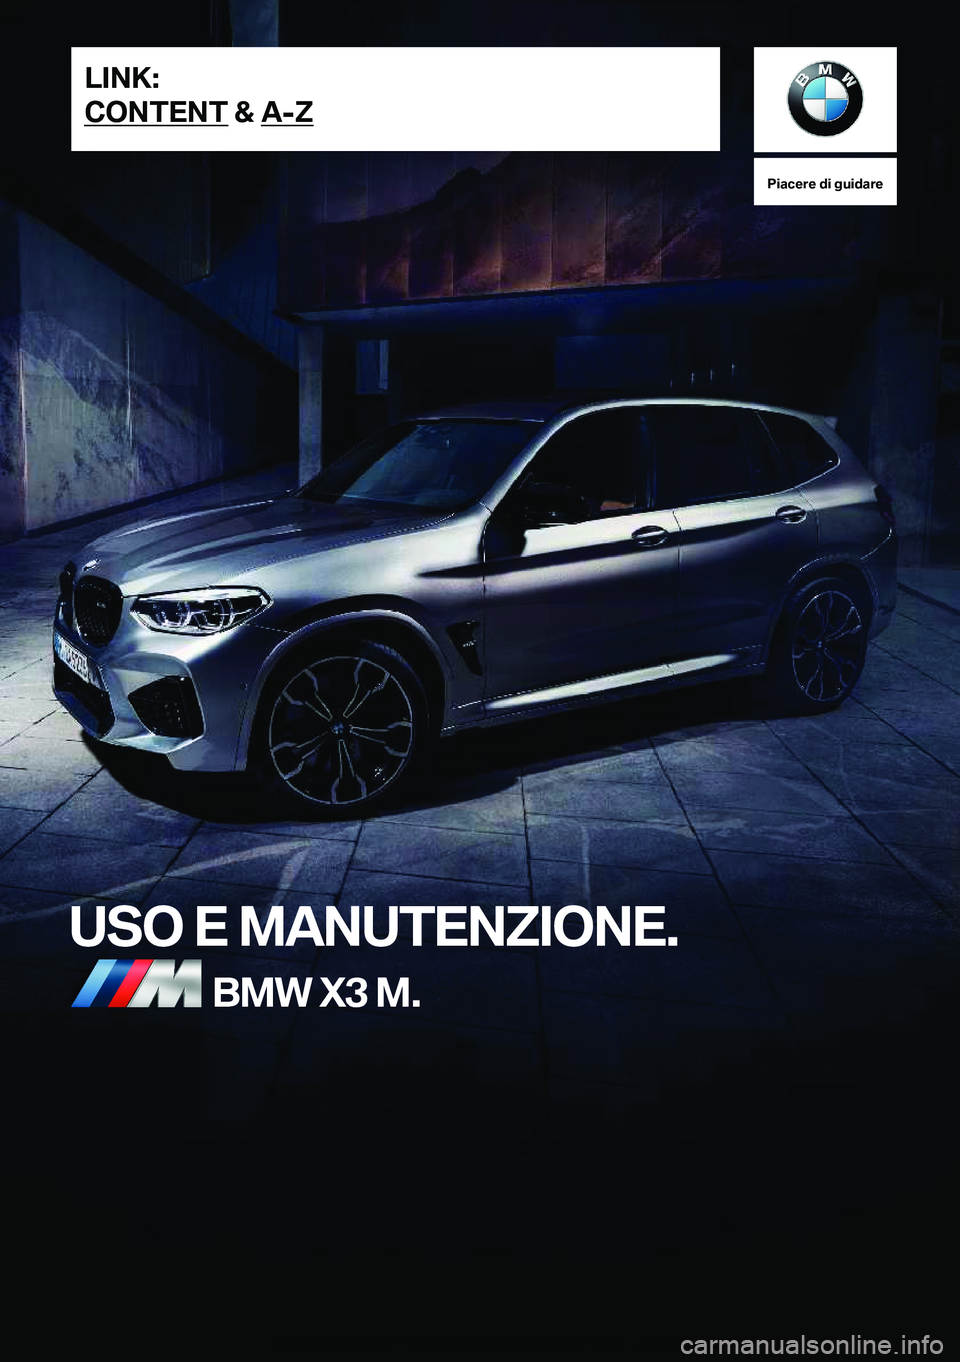 BMW X3 M 2021  Libretti Di Uso E manutenzione (in Italian) �P�i�a�c�e�r�e��d�i��g�u�i�d�a�r�e
�U�S�O��E��M�A�N�U�T�E�N�Z�I�O�N�E�.�B�M�W��X�3��M�.�L�I�N�K�:
�C�O�N�T�E�N�T��&��A�-�Z�O�n�l�i�n�e��E�d�i�t�i�o�n��f�o�r��P�a�r�t��n�o�.��0�1�4�0�5�A�1